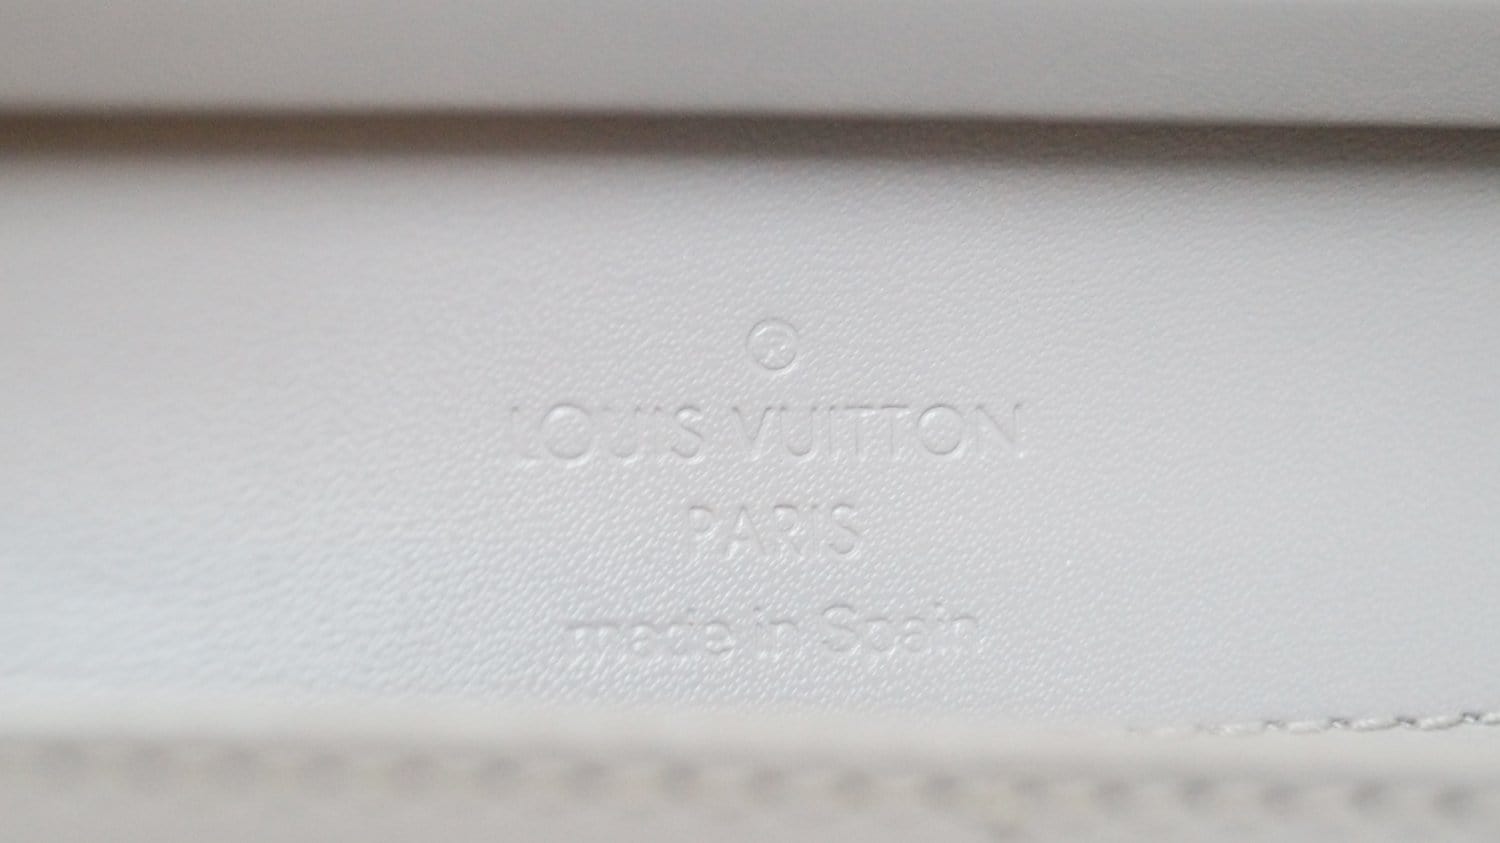 Louis Vuitton Noir Epi Leather Honfleur Clutch Bag